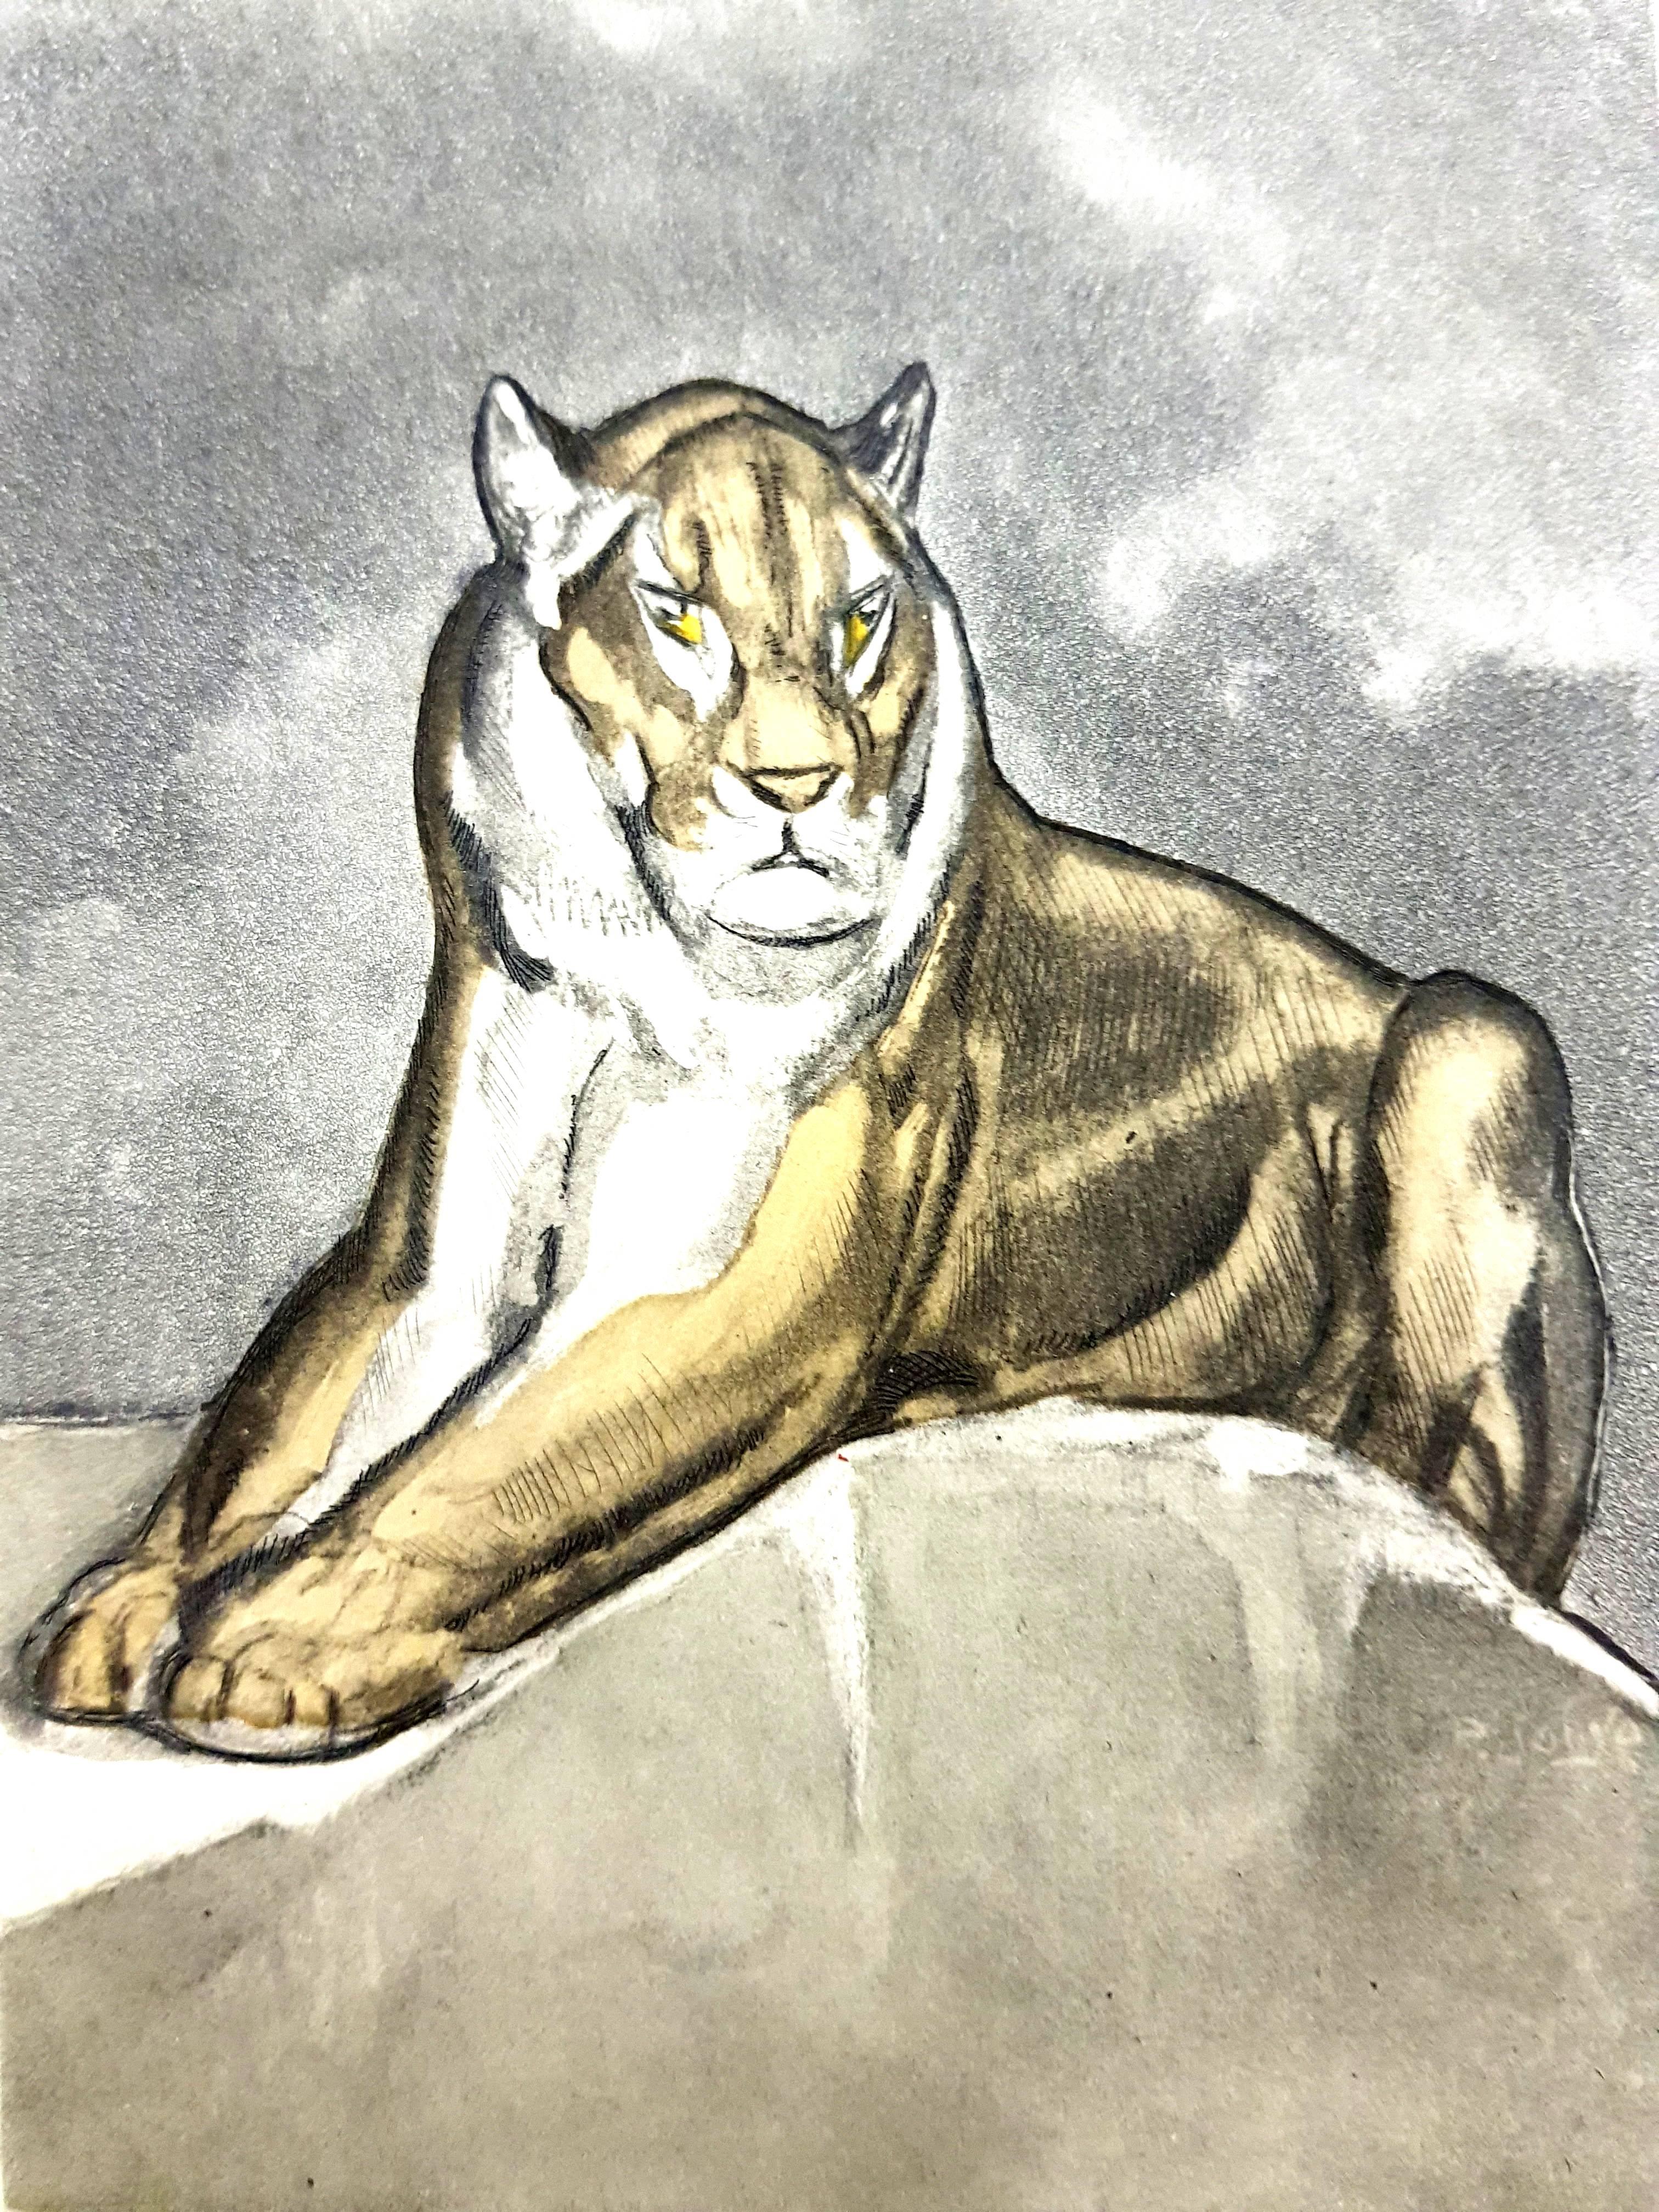 Paul Jouve (after) - Tiger - Original Engraving - Print by Pierre-Paul Jouve